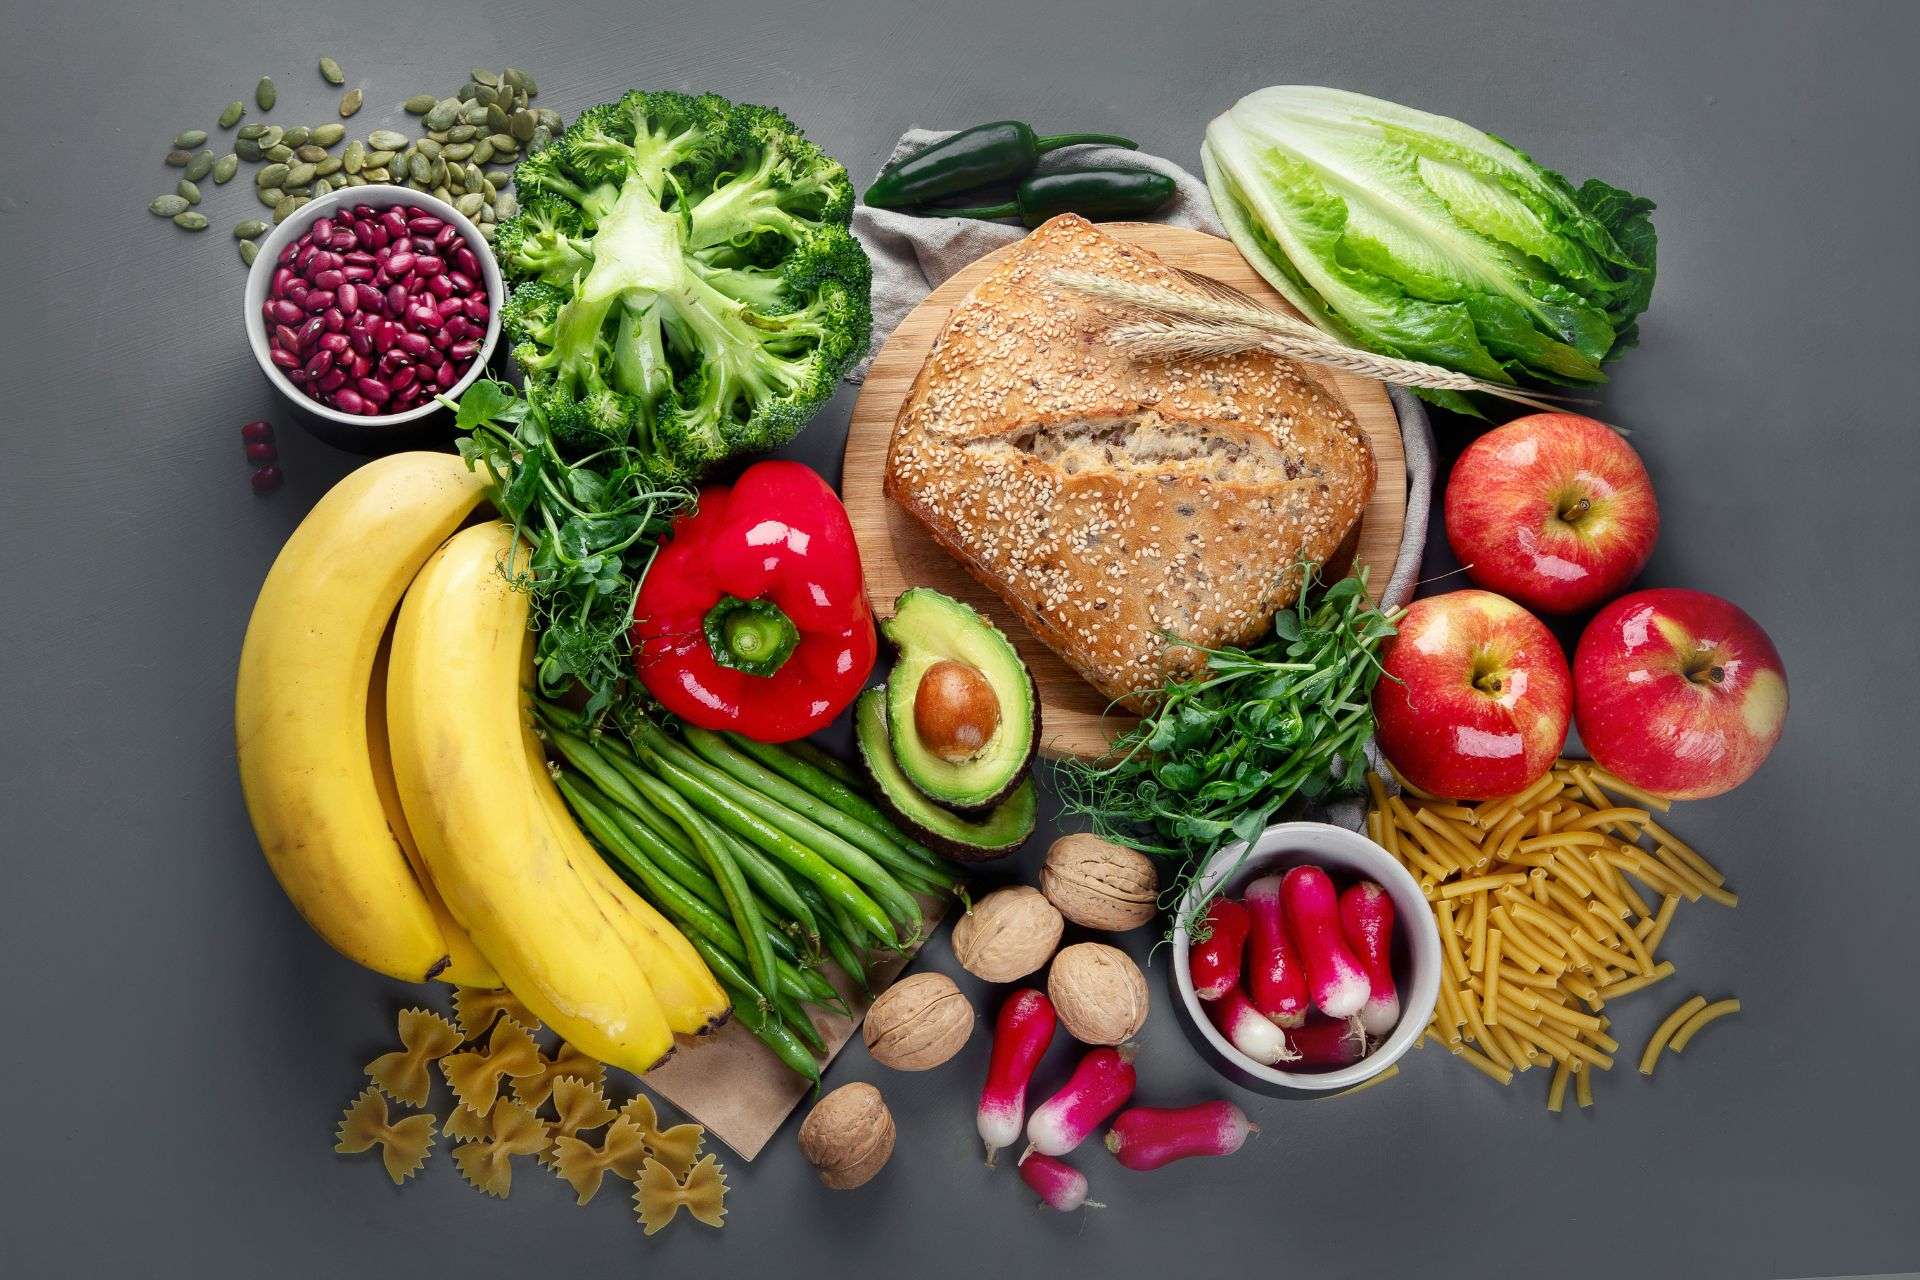 Gli alimenti vegetali ricchi di fibre possono migliorare il benessere dell’intestino